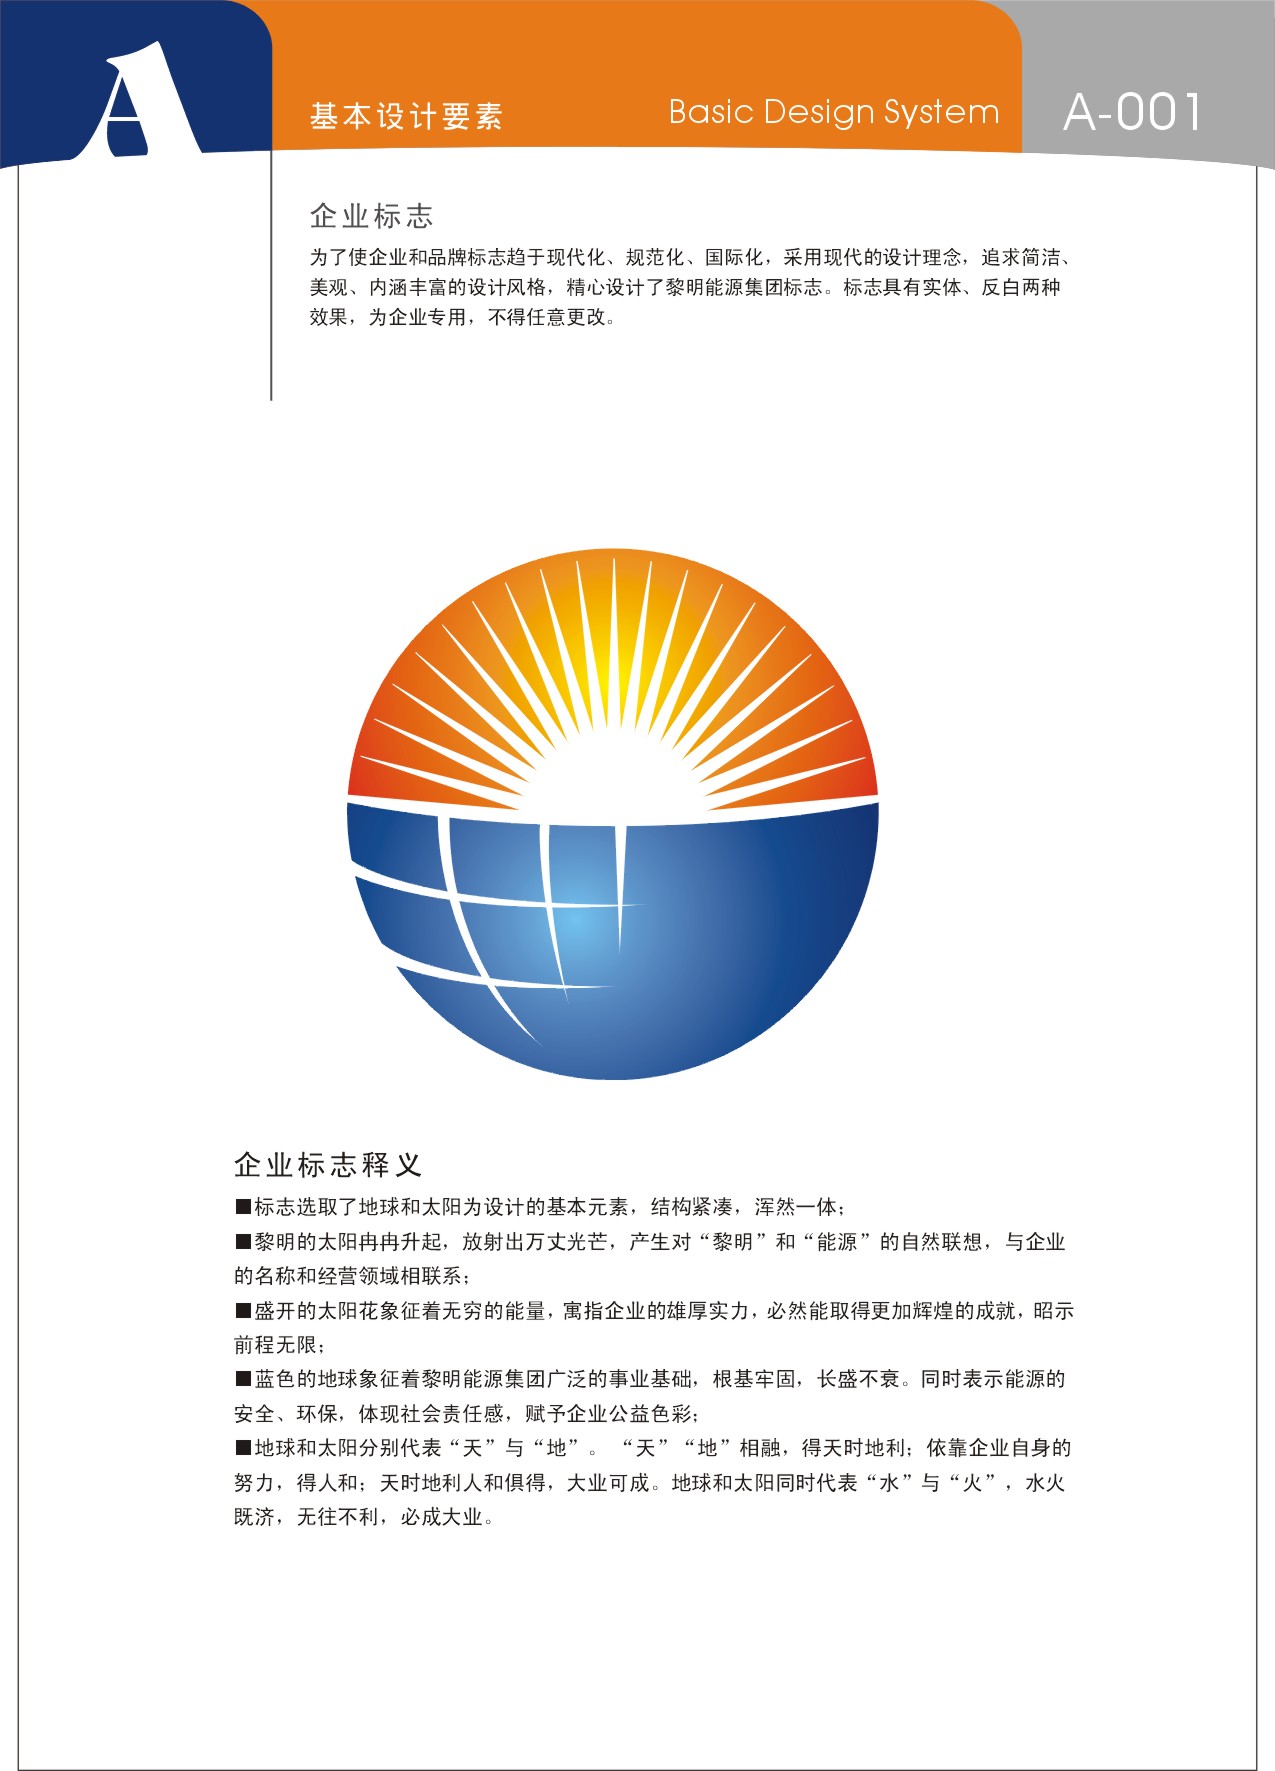 贵州黎明能源集团有限责任公司,【招聘信息】